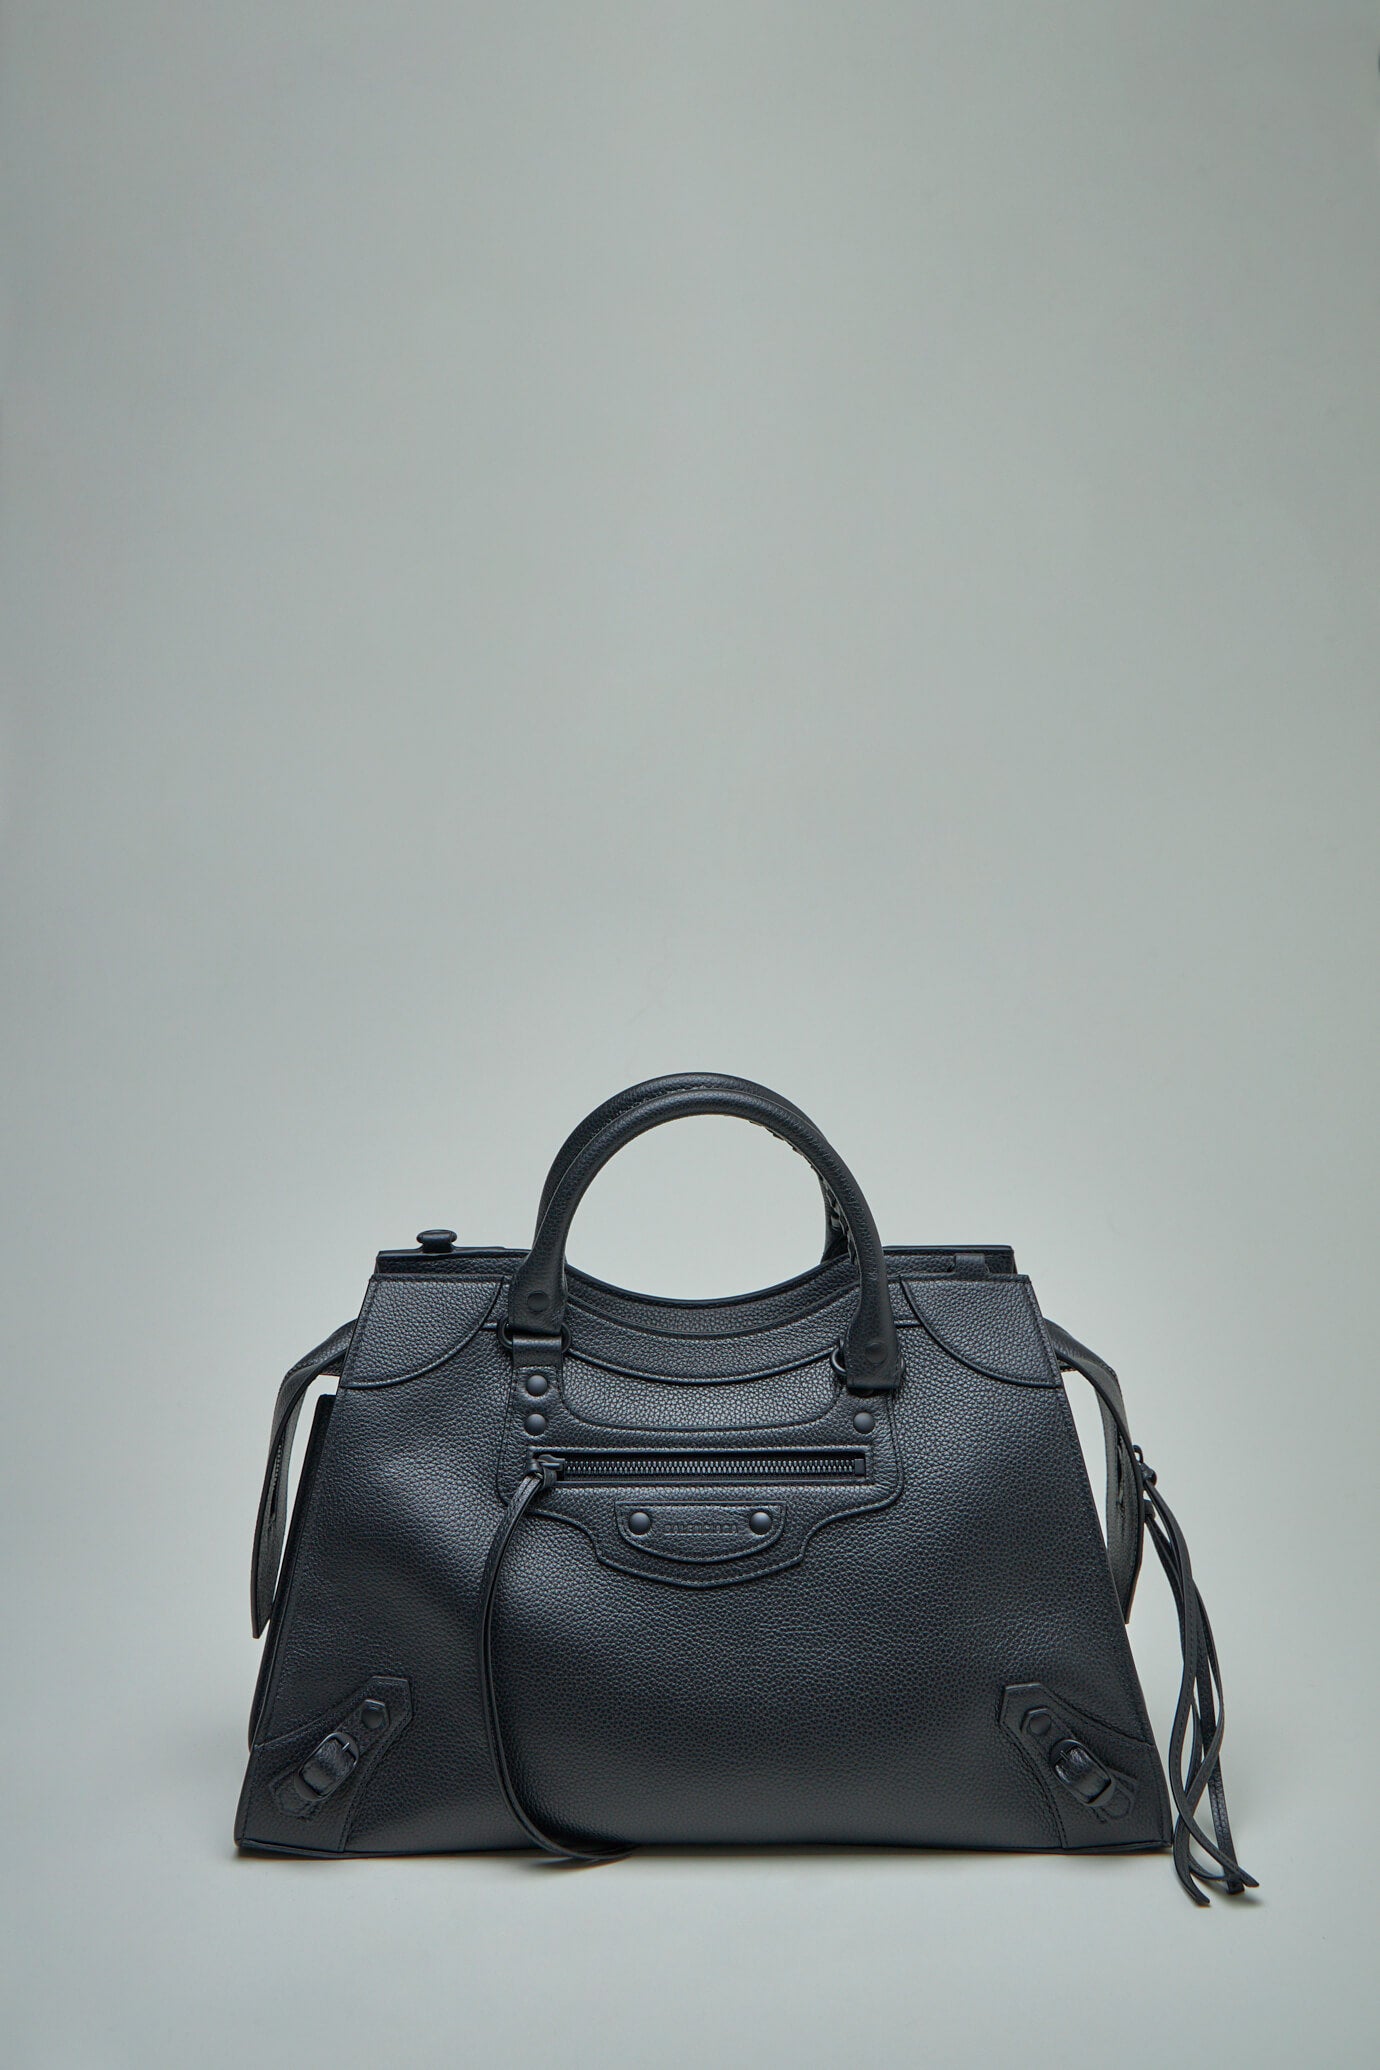 Neo Classic Medium Handbag in Dark Grey